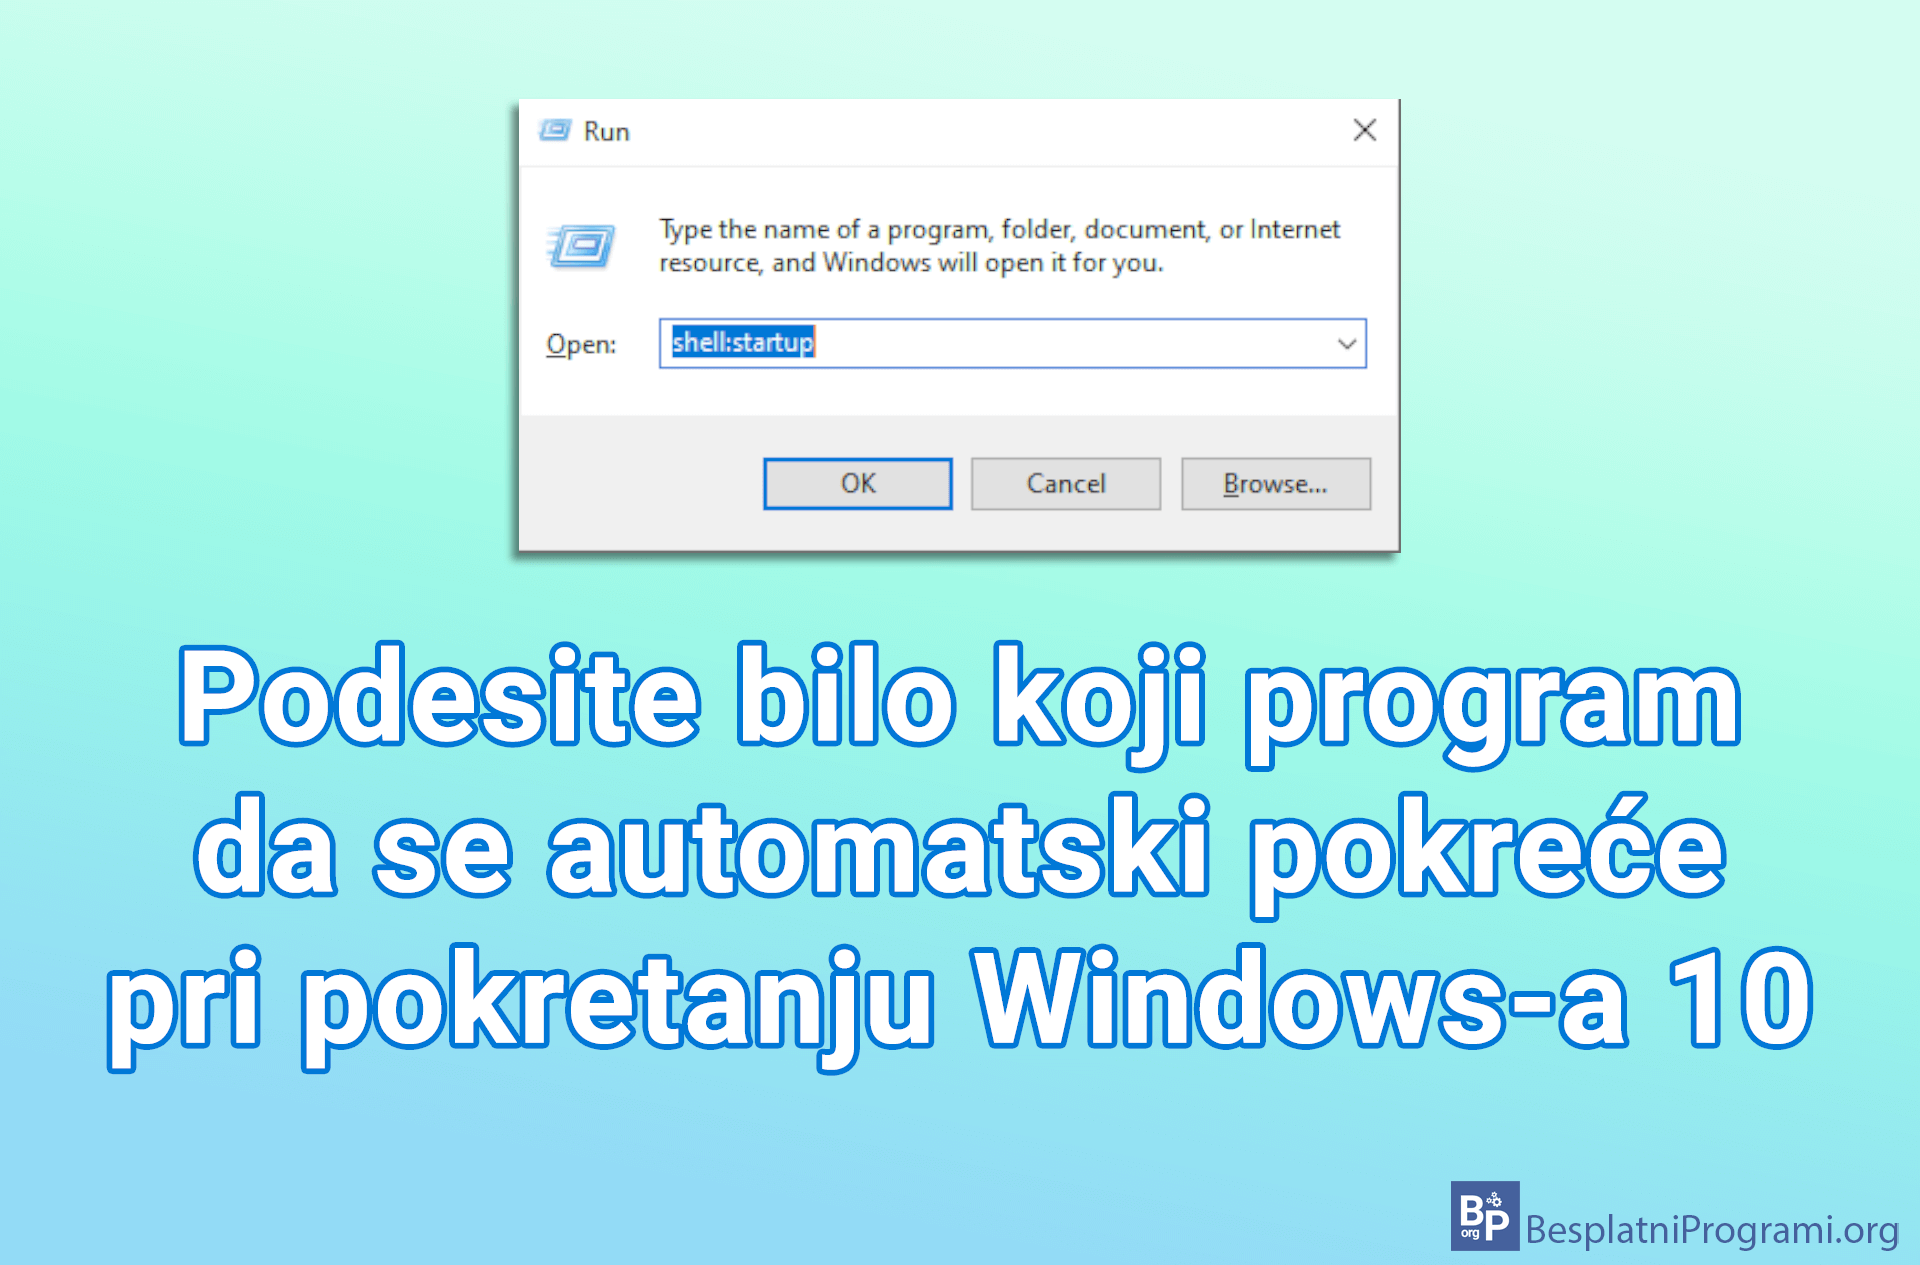 Podesite bilo koji program da se automatski pokreće pri pokretanju Windows-a 10